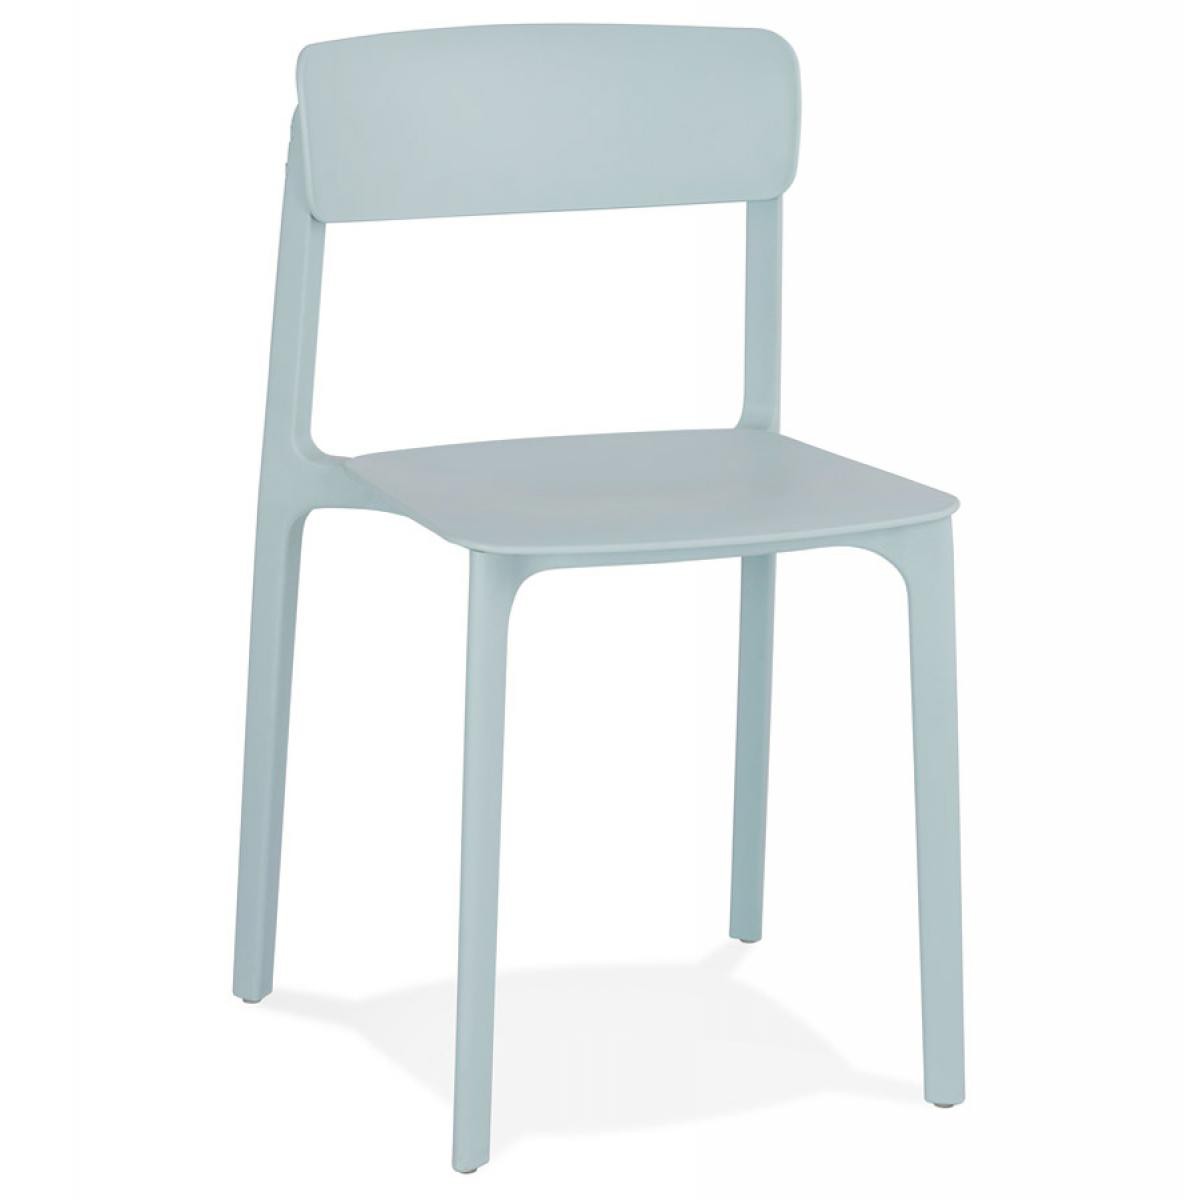 Alterego - Chaise intérieur / extérieur empilable 'TROPICAL' en matière plastique bleu pastel - Chaises